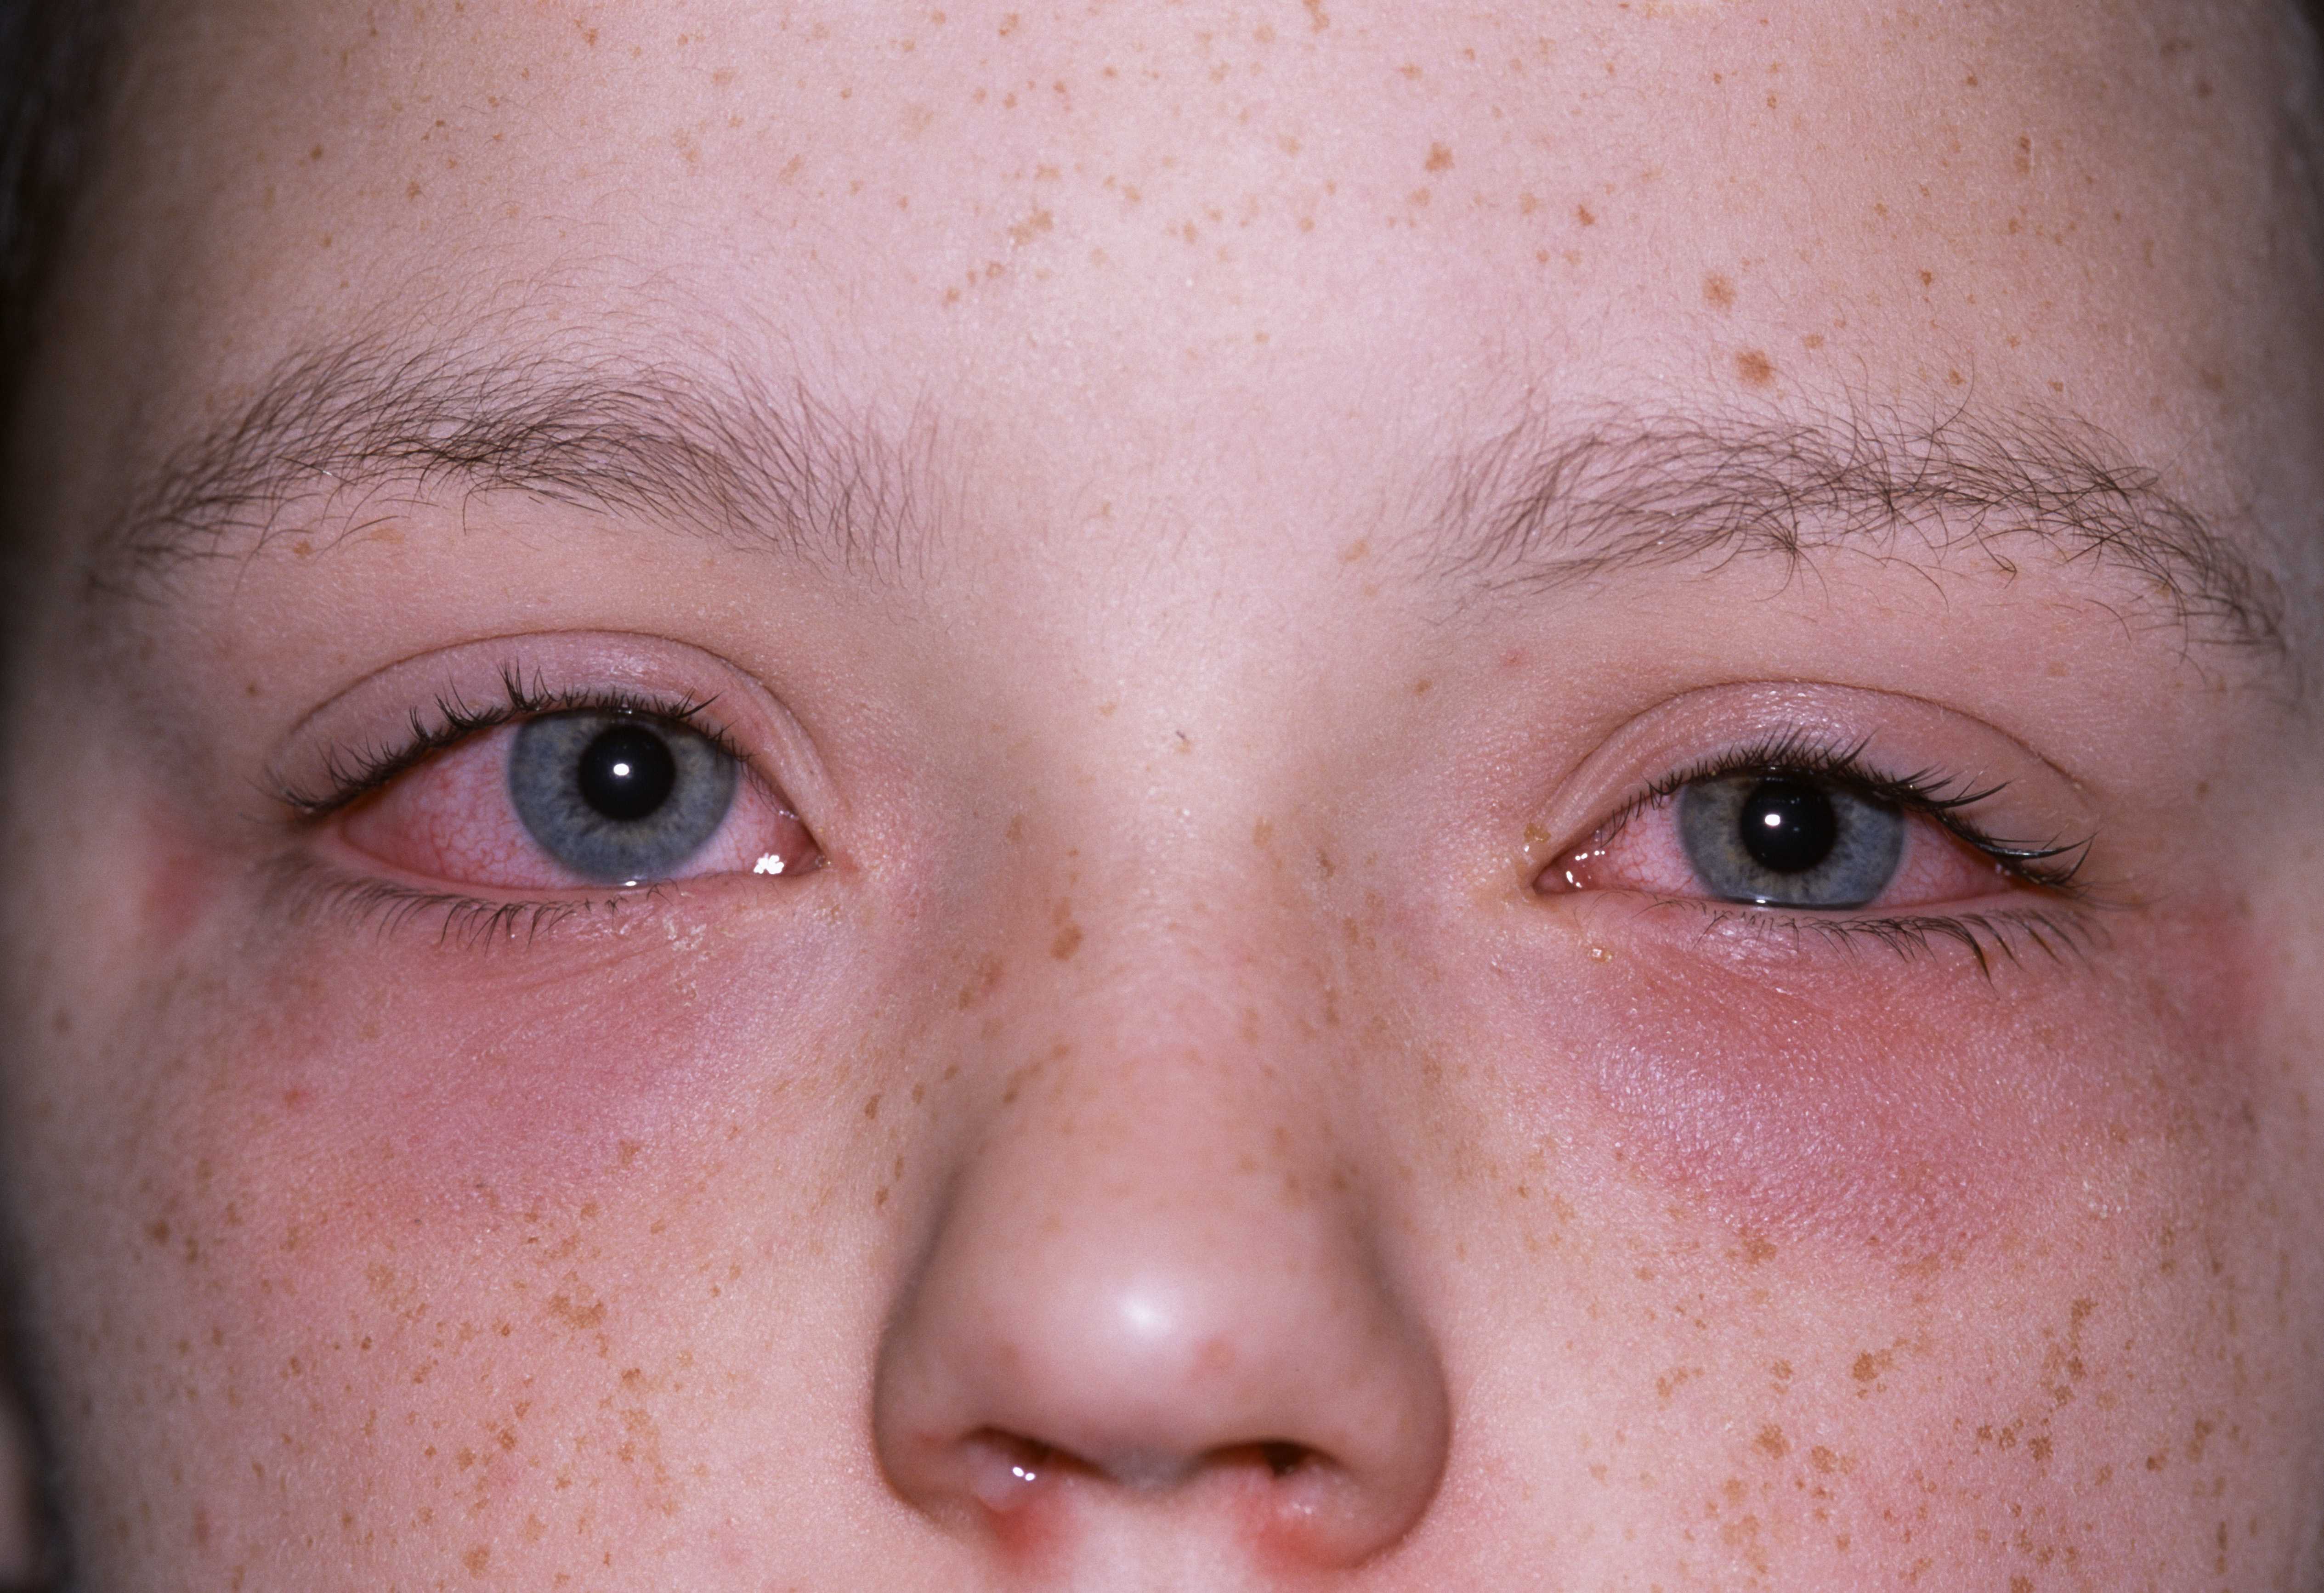 Аллергия: что это, почему возникает и можно ли избавиться навсегда | рбк тренды